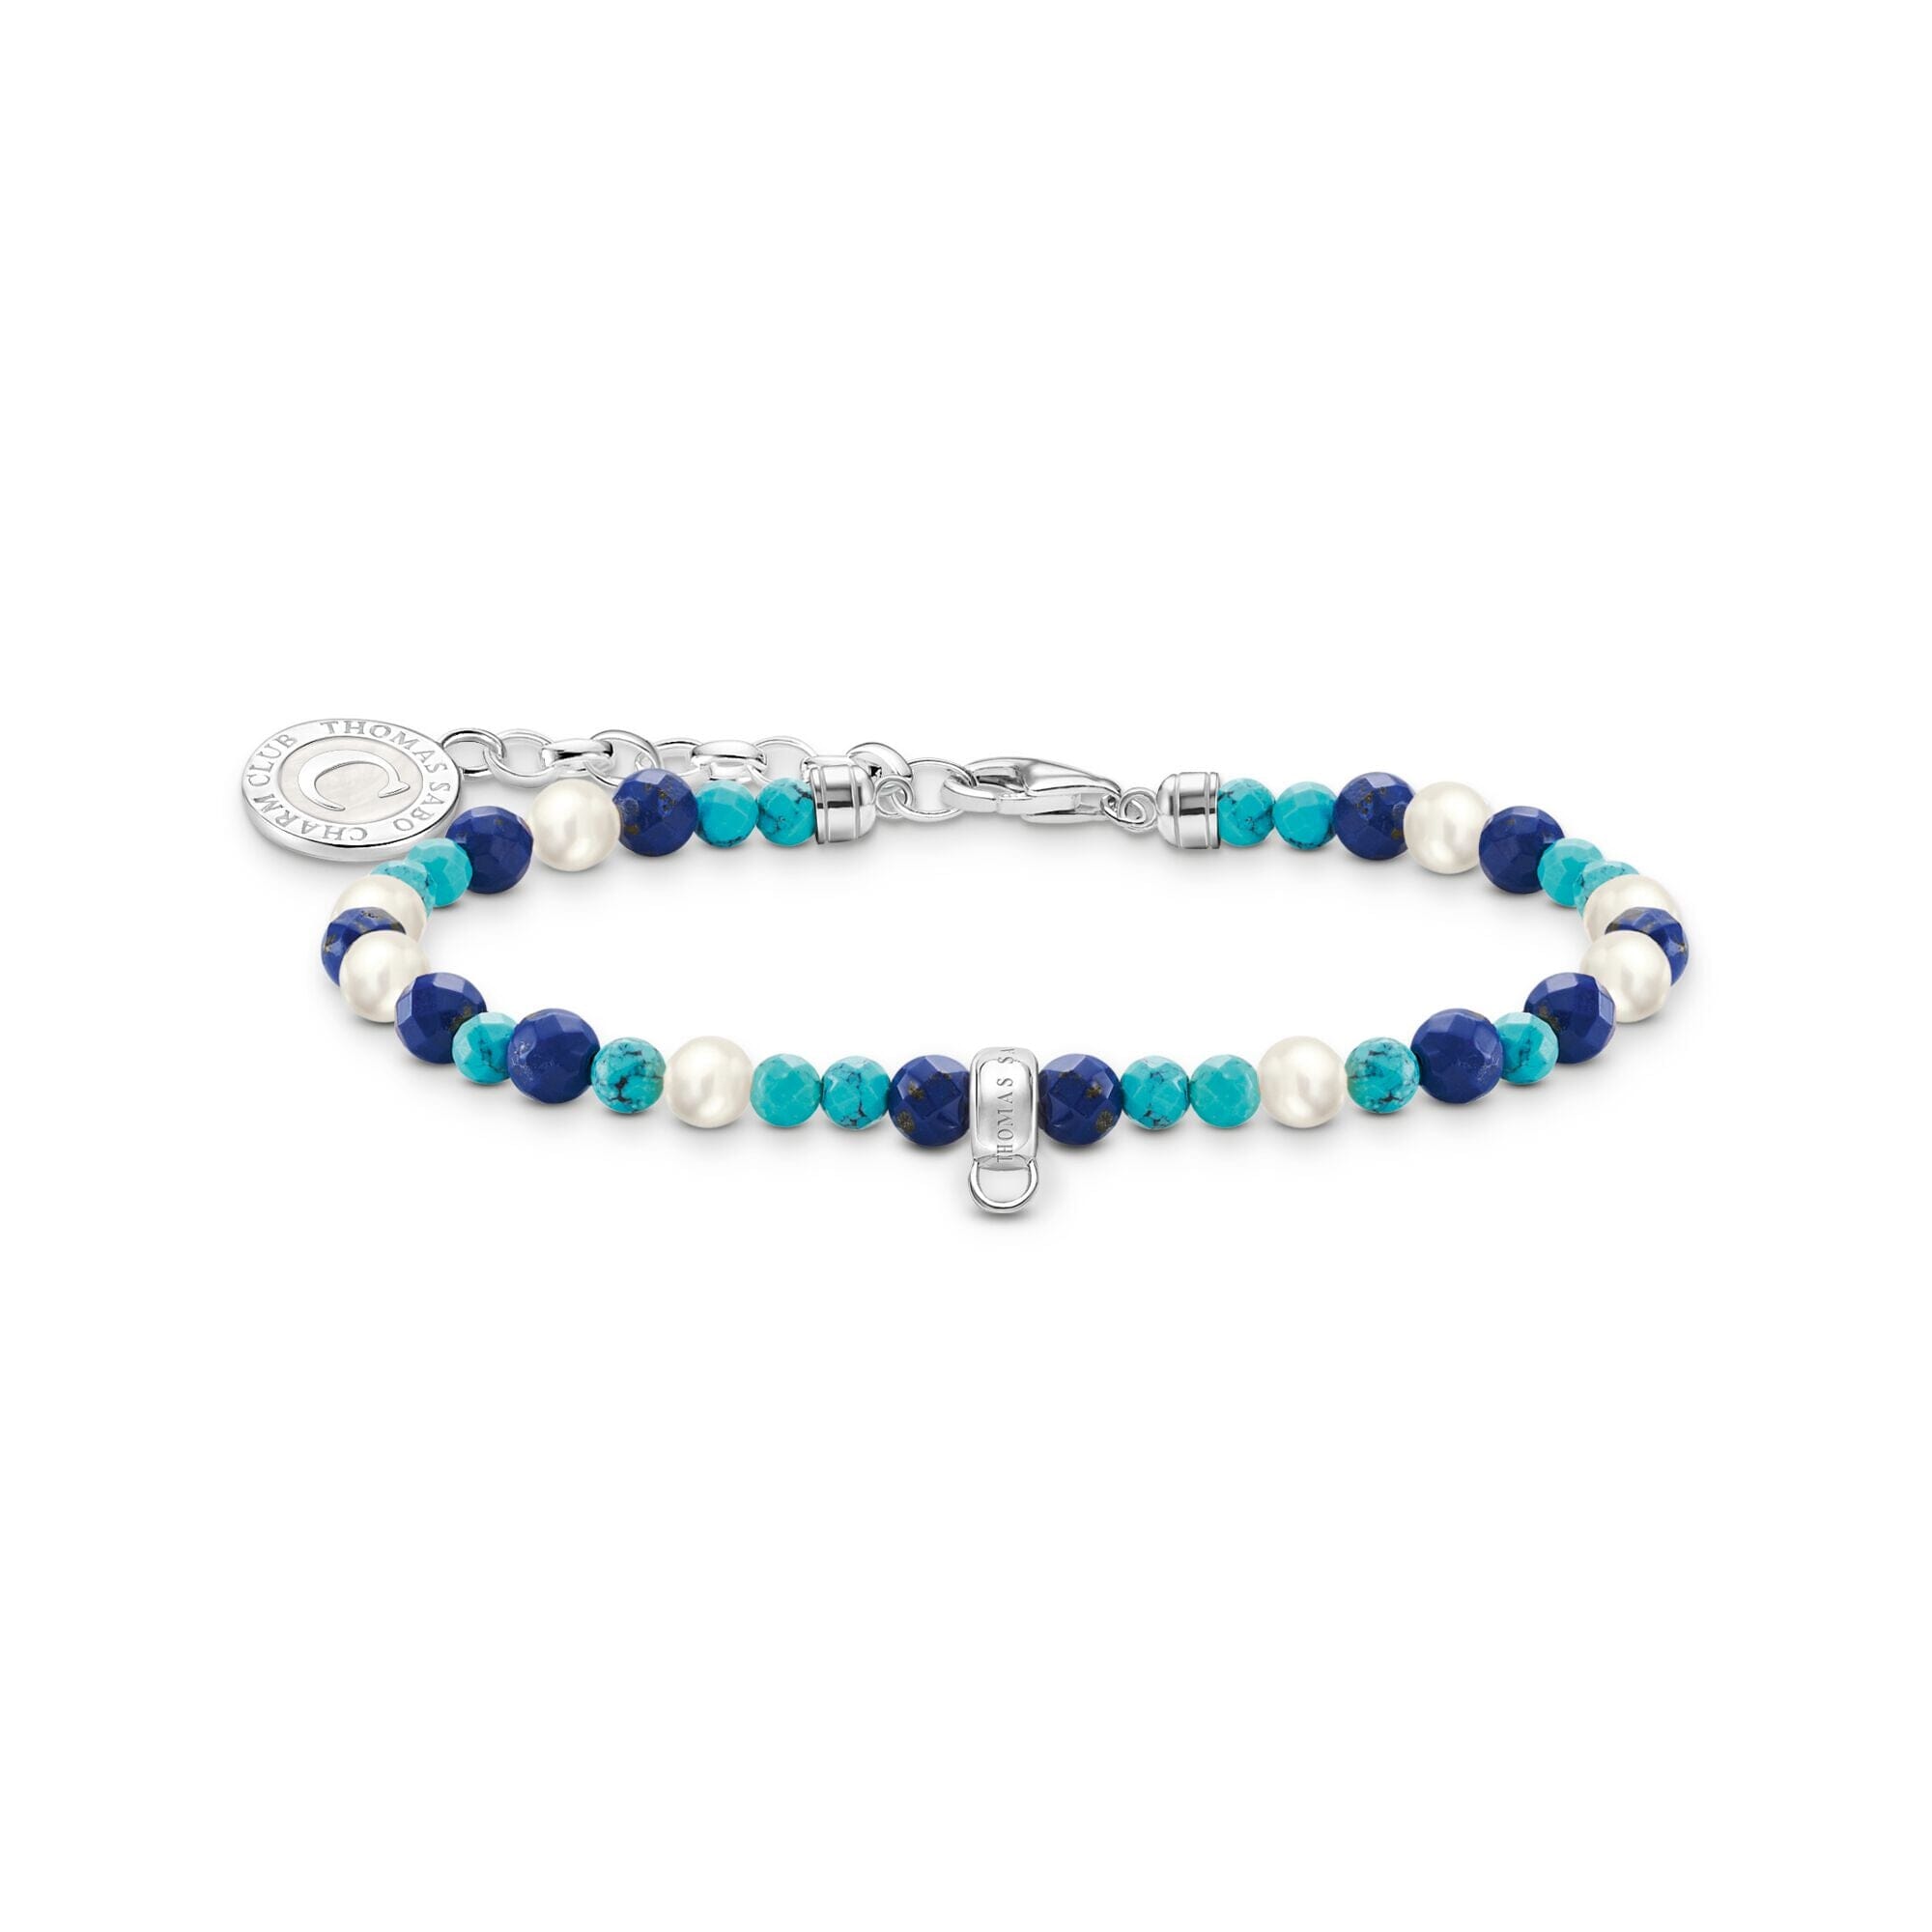 THOMAS SABO Member Charm Bracelet with White Pearls & Blue Beads Bracelets THOMAS SABO Charmista 